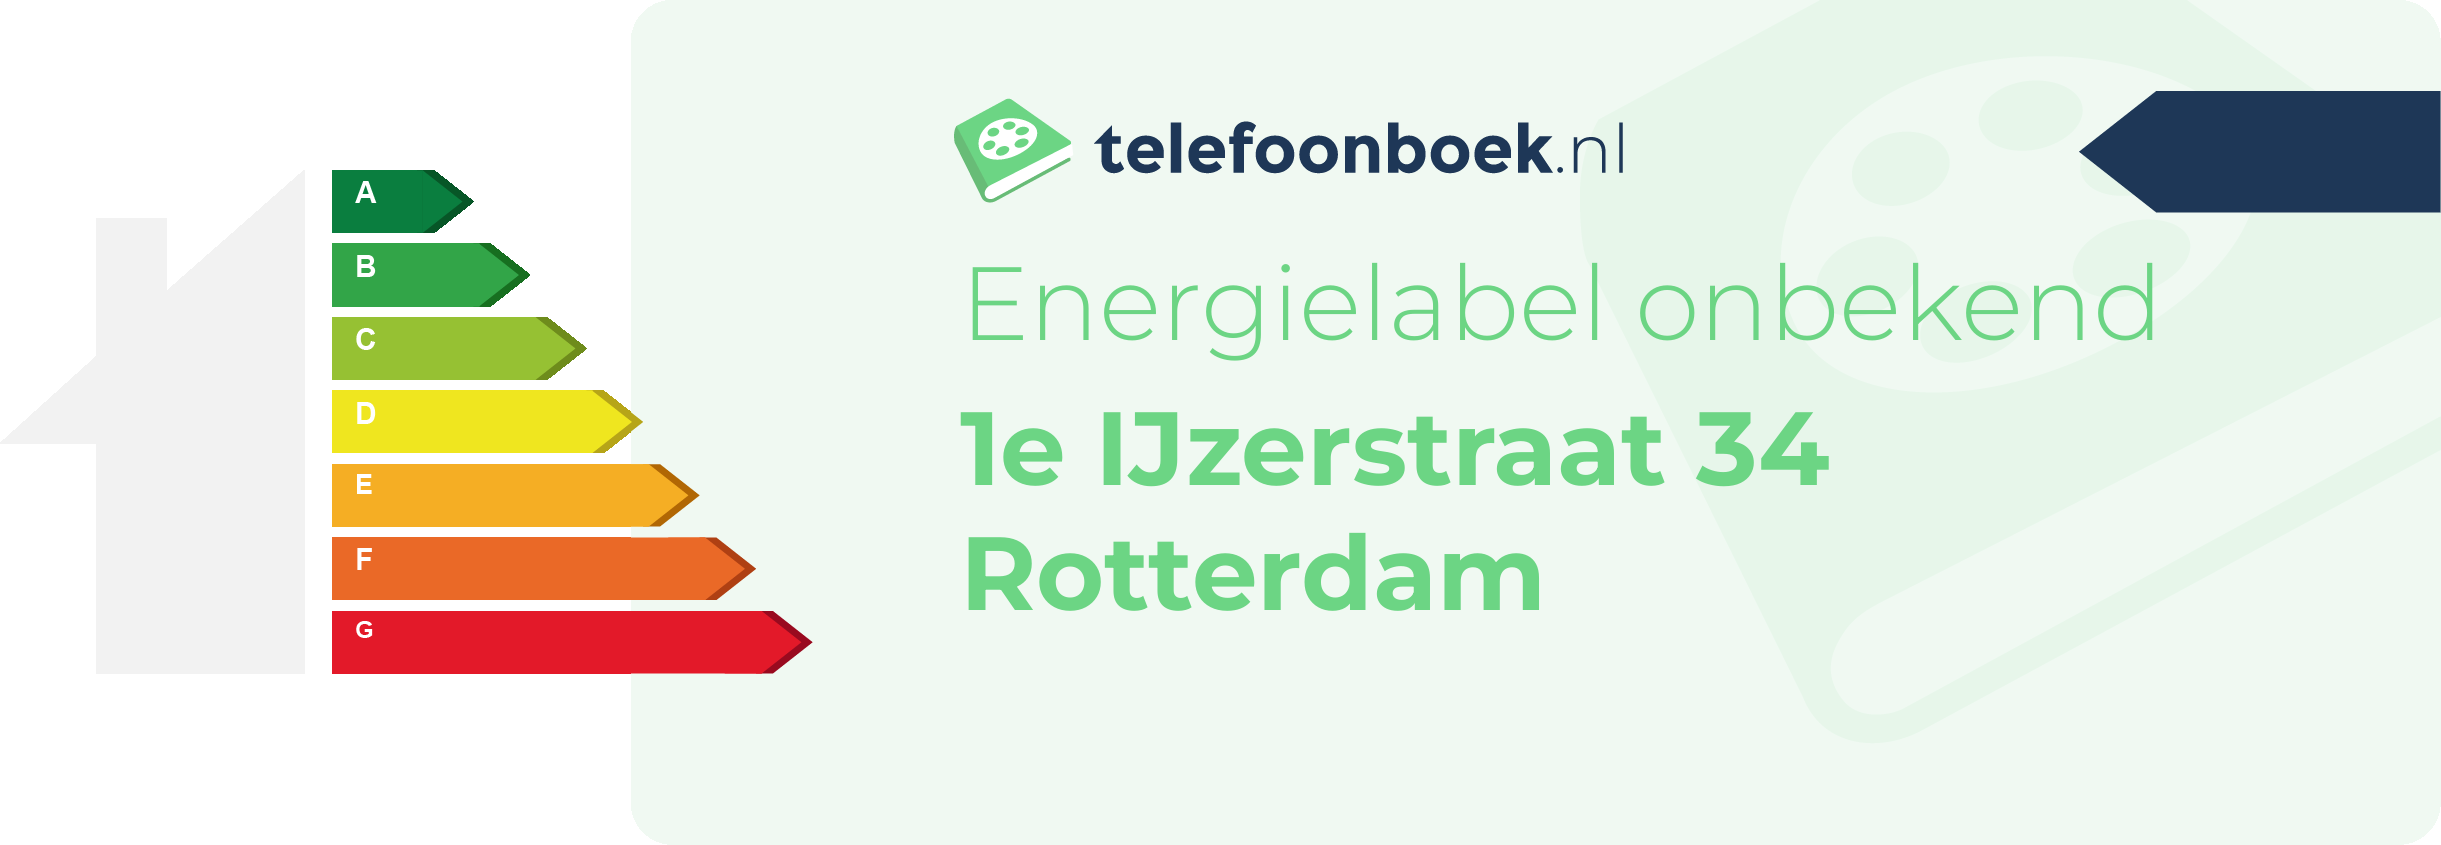 Energielabel 1e IJzerstraat 34 Rotterdam